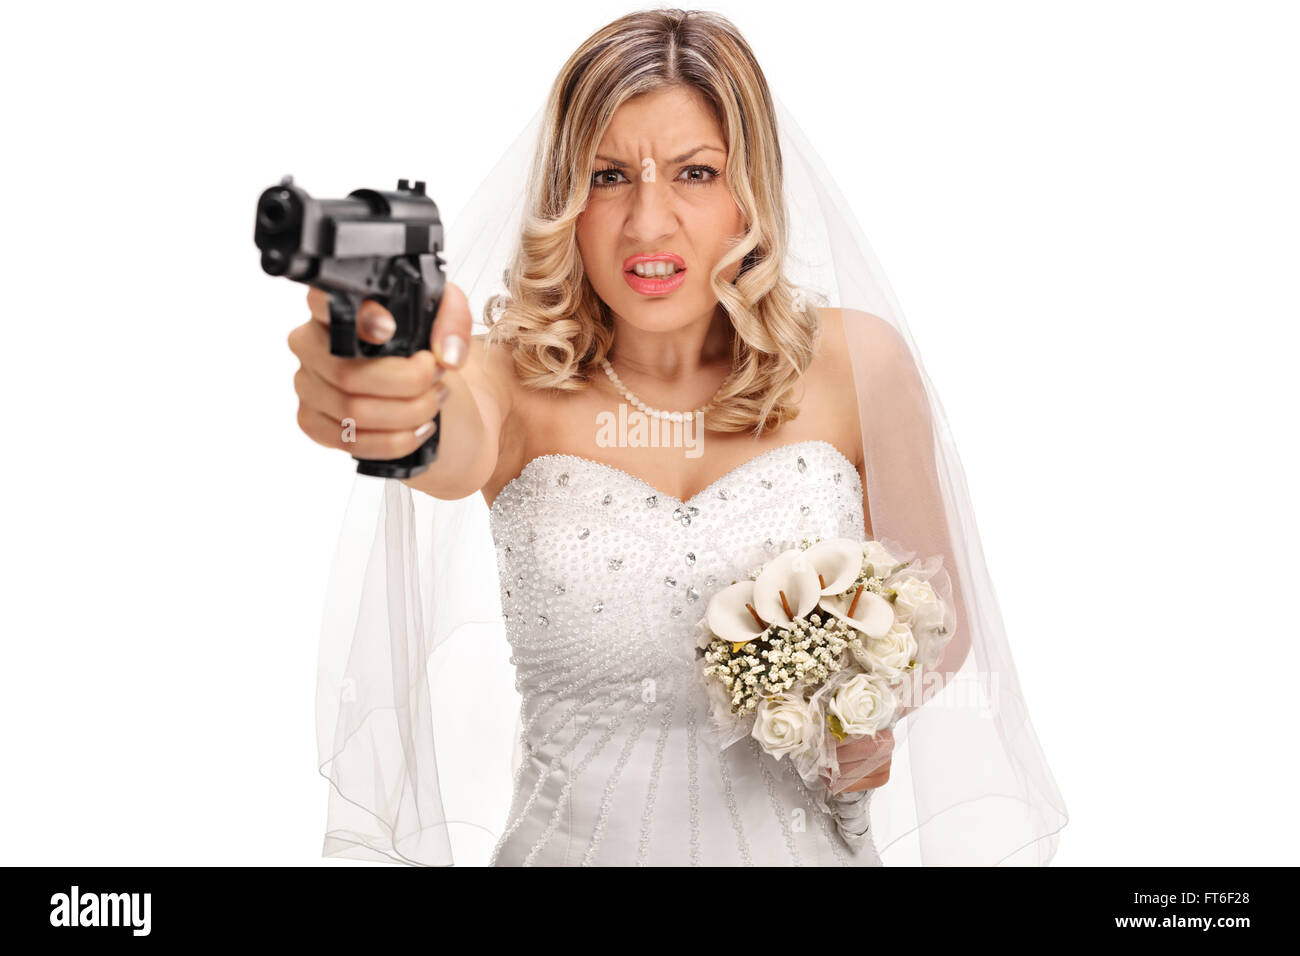 Jeune mariée désespérée braquer une arme en direction de l'appareil isolé sur fond blanc Banque D'Images